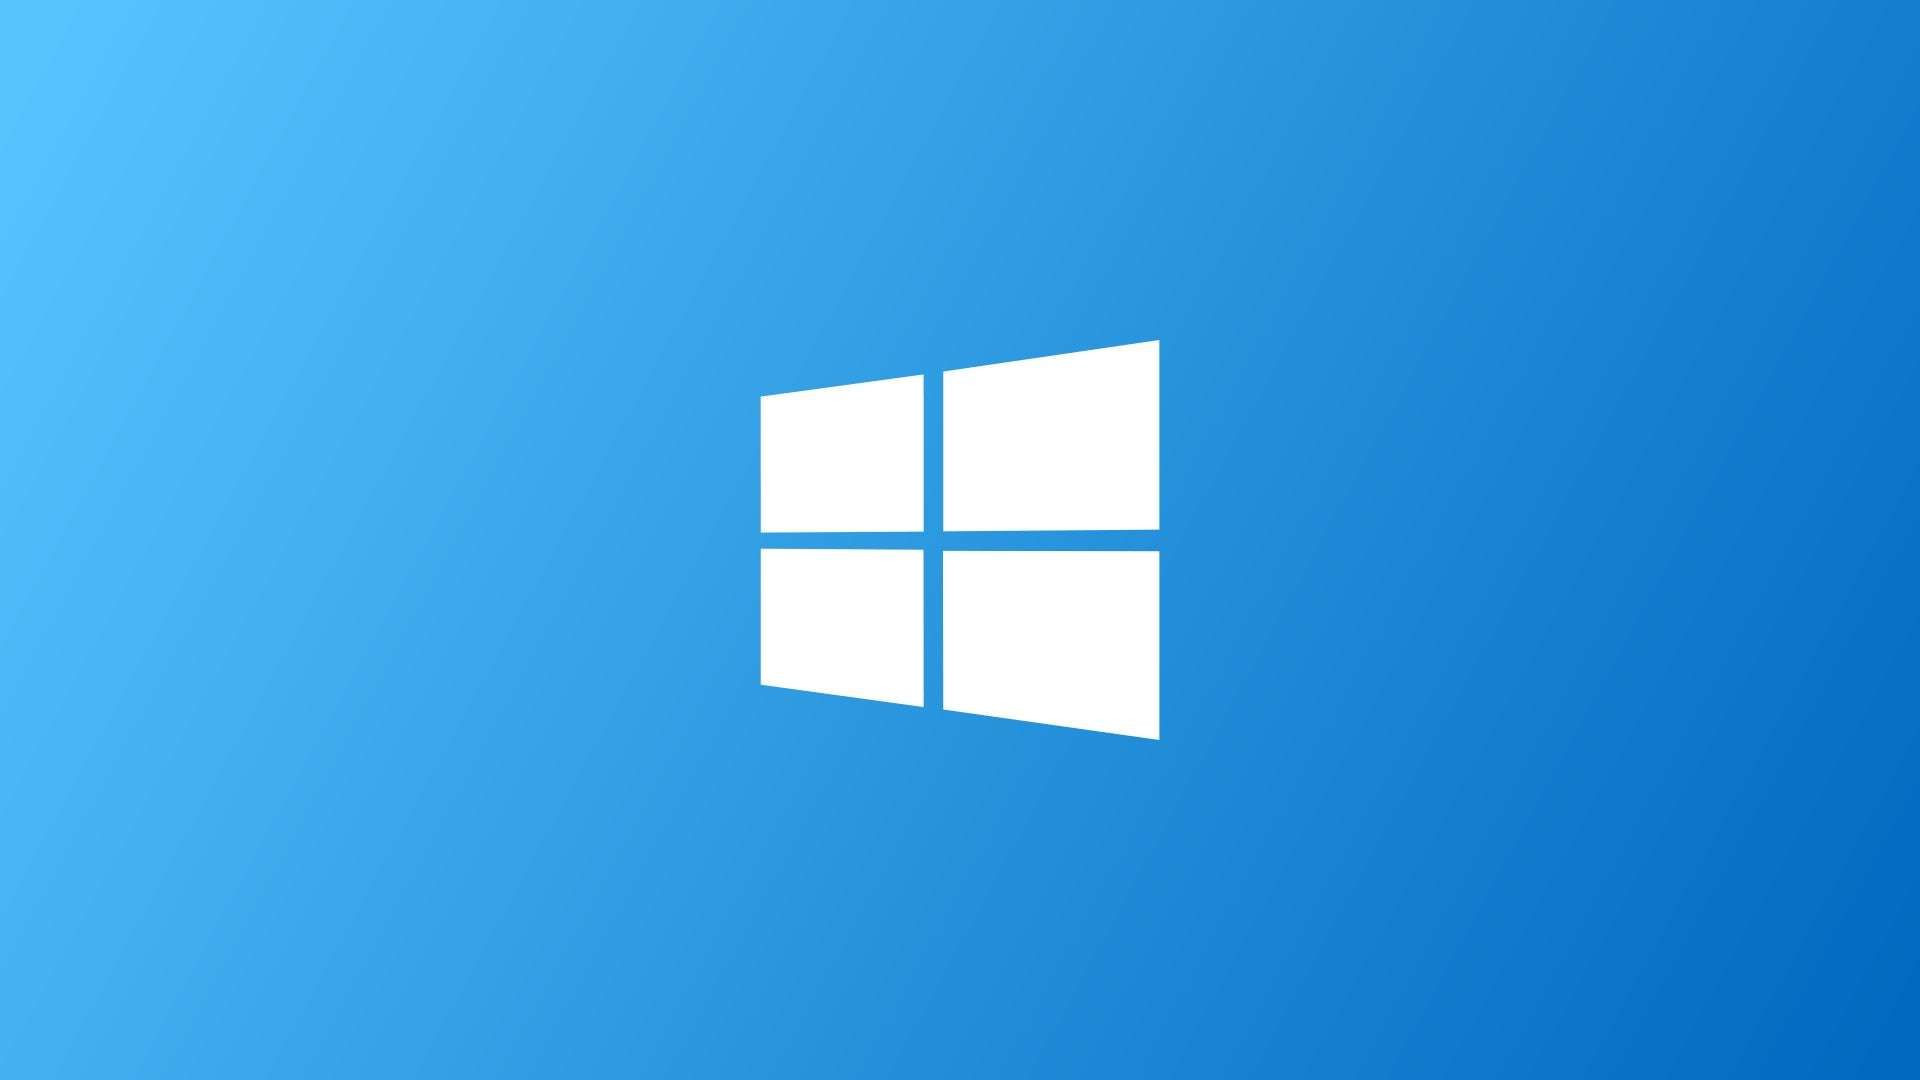 Быстрые настройки Windows 10 получат новый дизайн